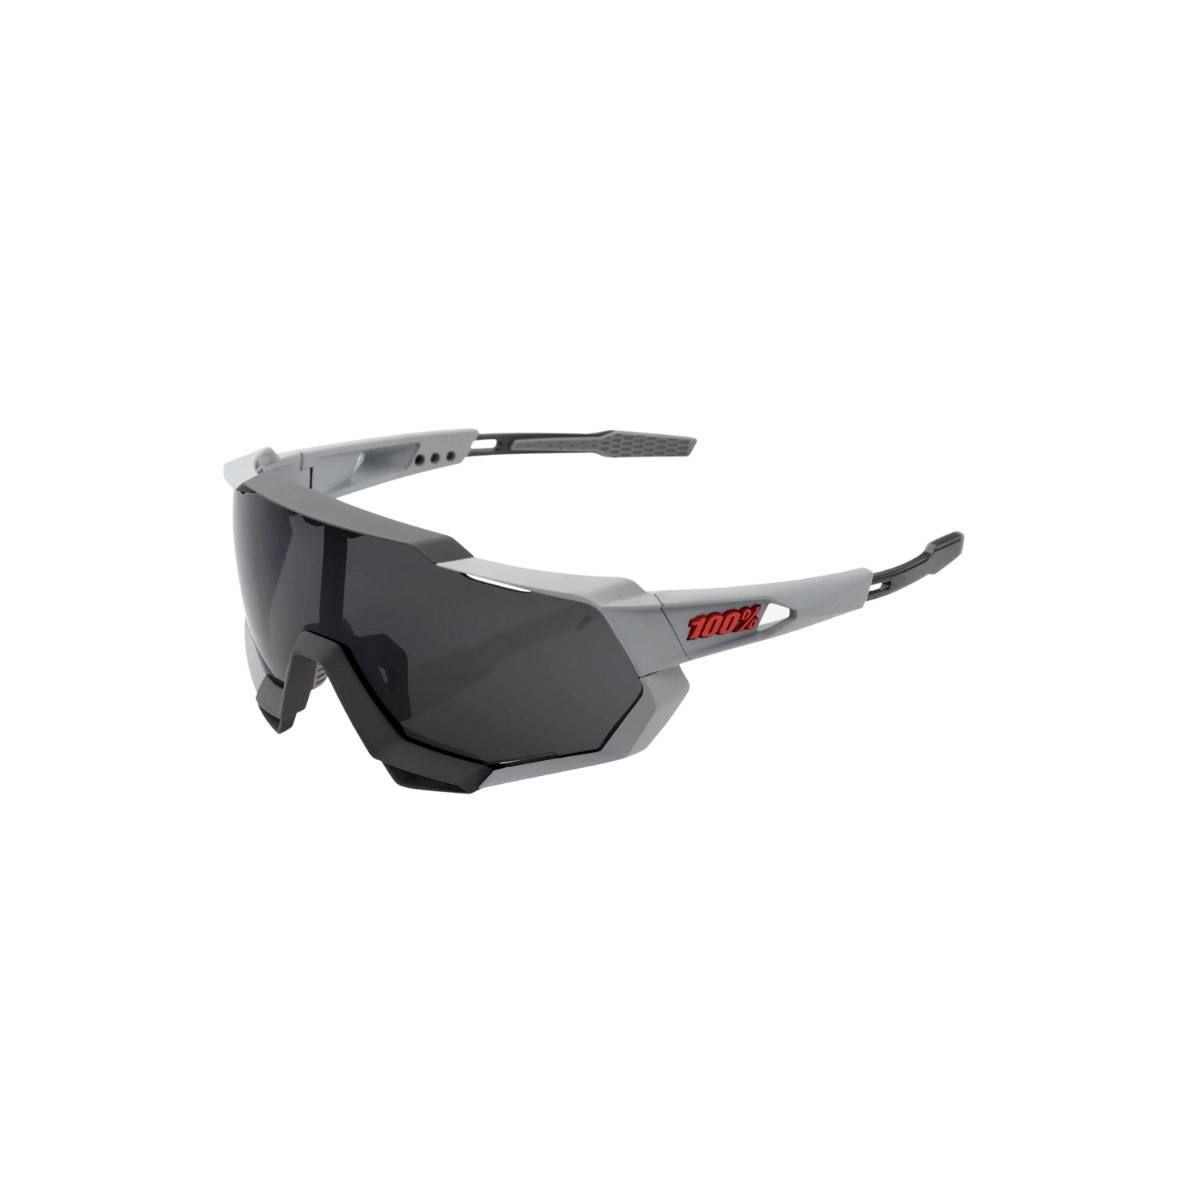 Glasses 100% Speedtrap Gray - Smoke Lenses